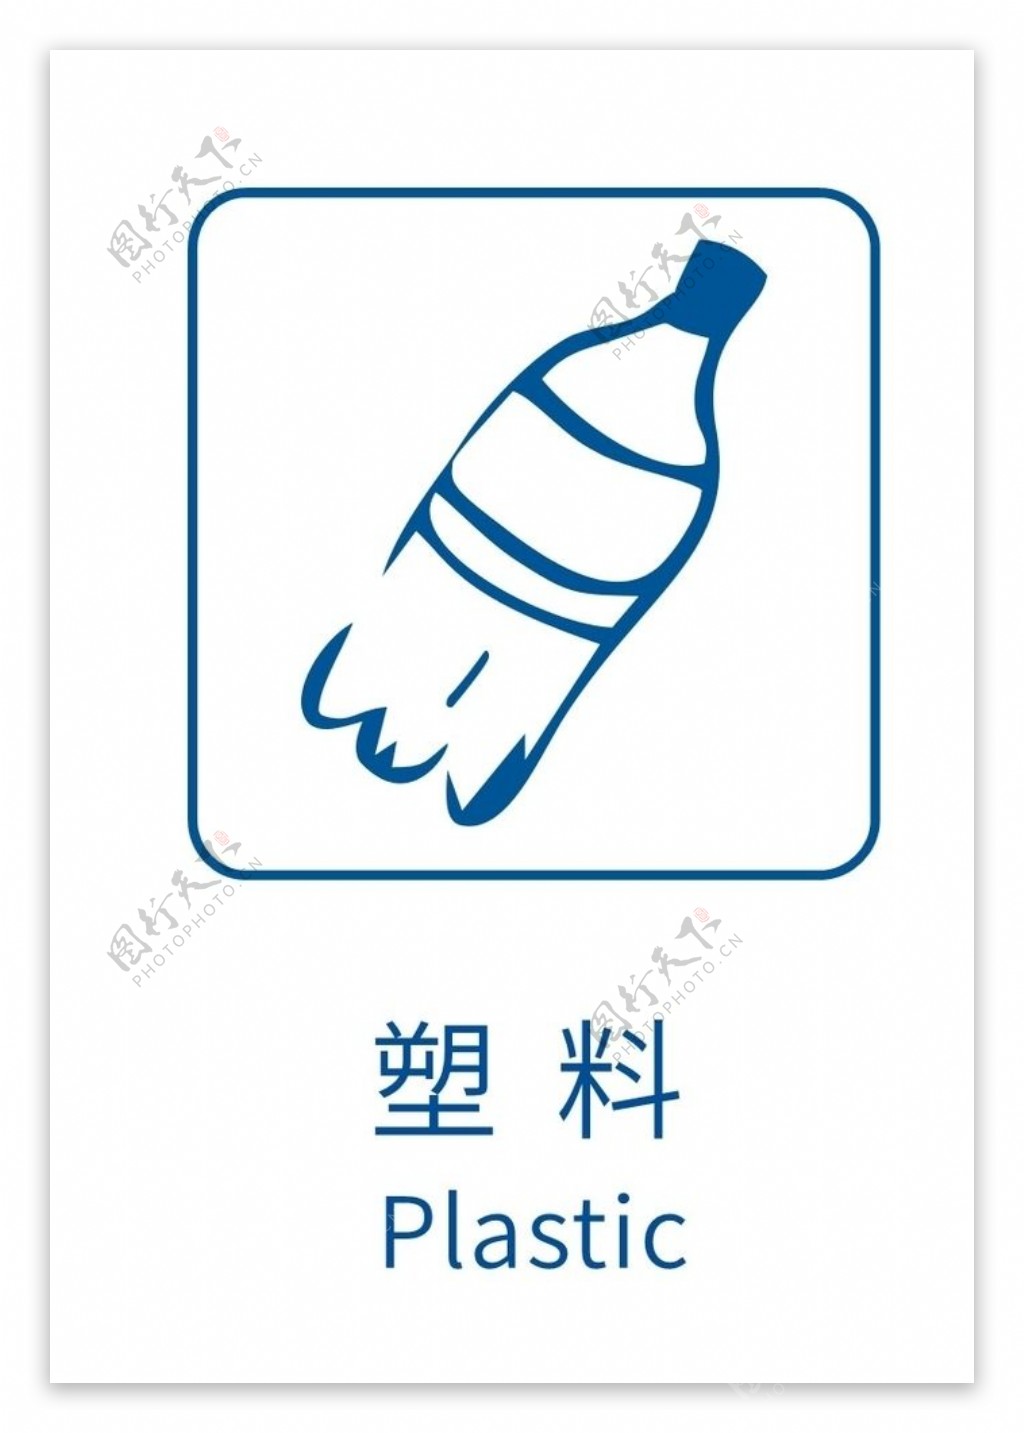 生活垃圾分类标志塑料